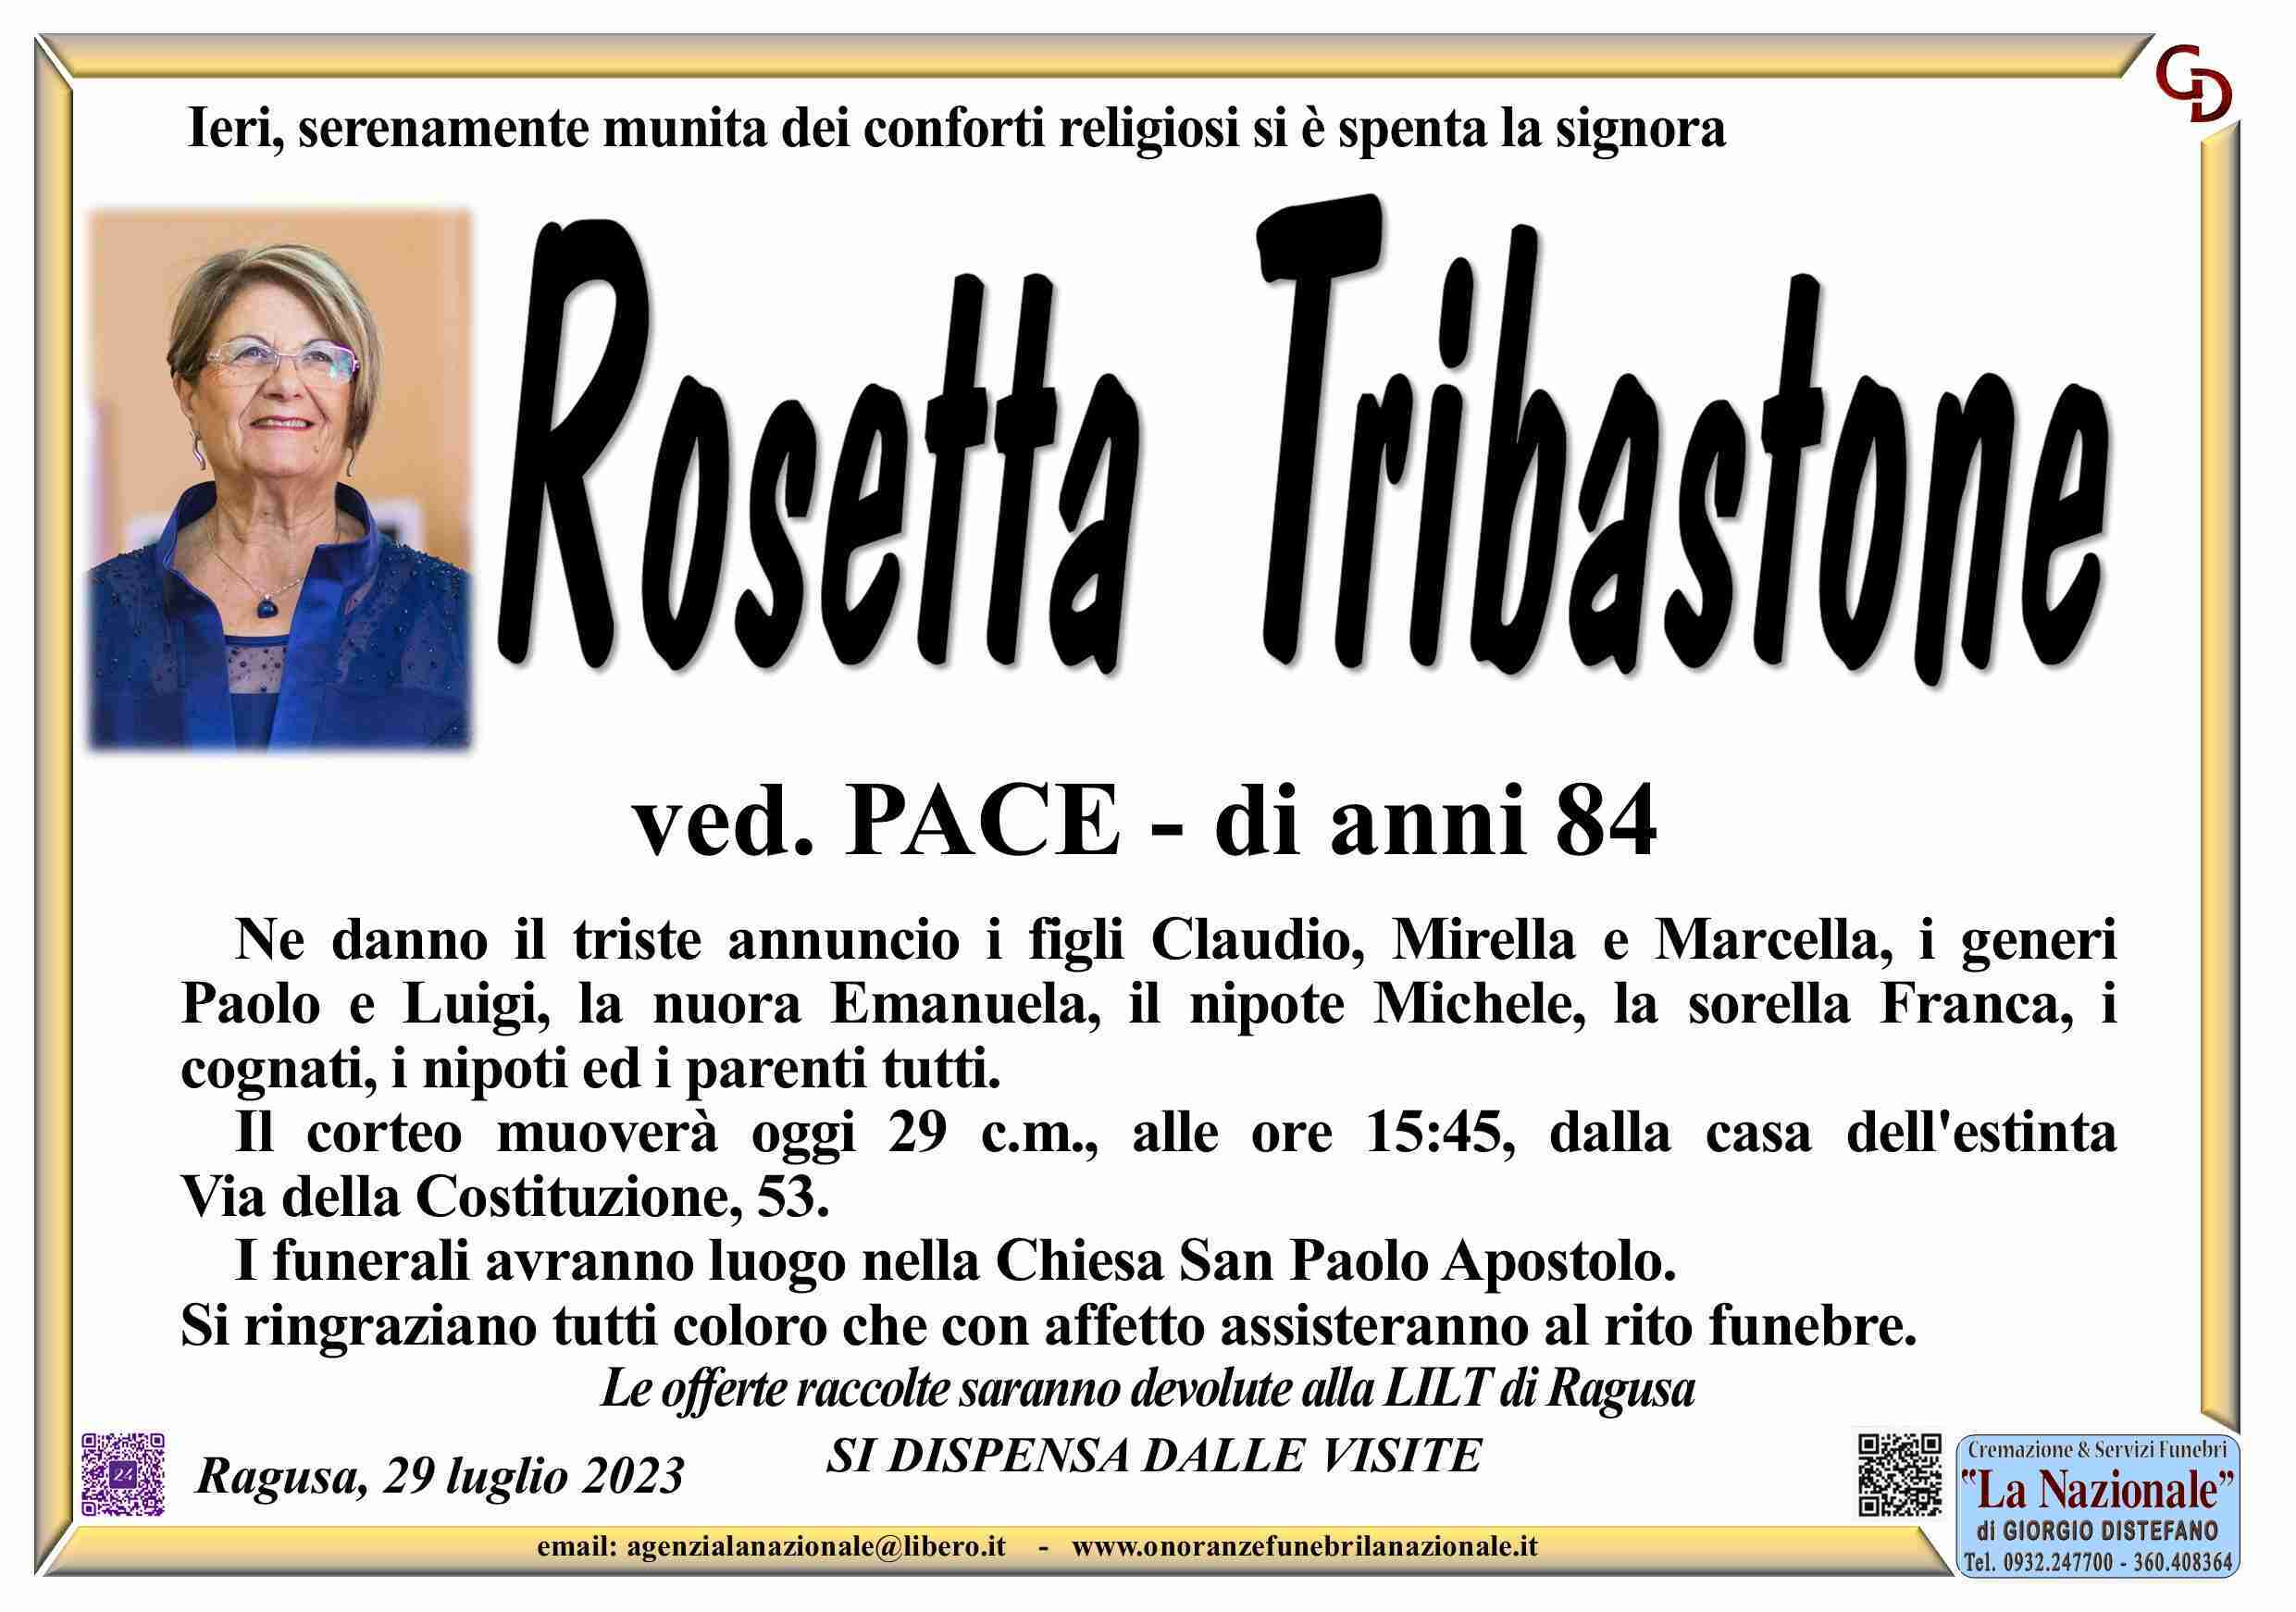 Rosetta Tribastone